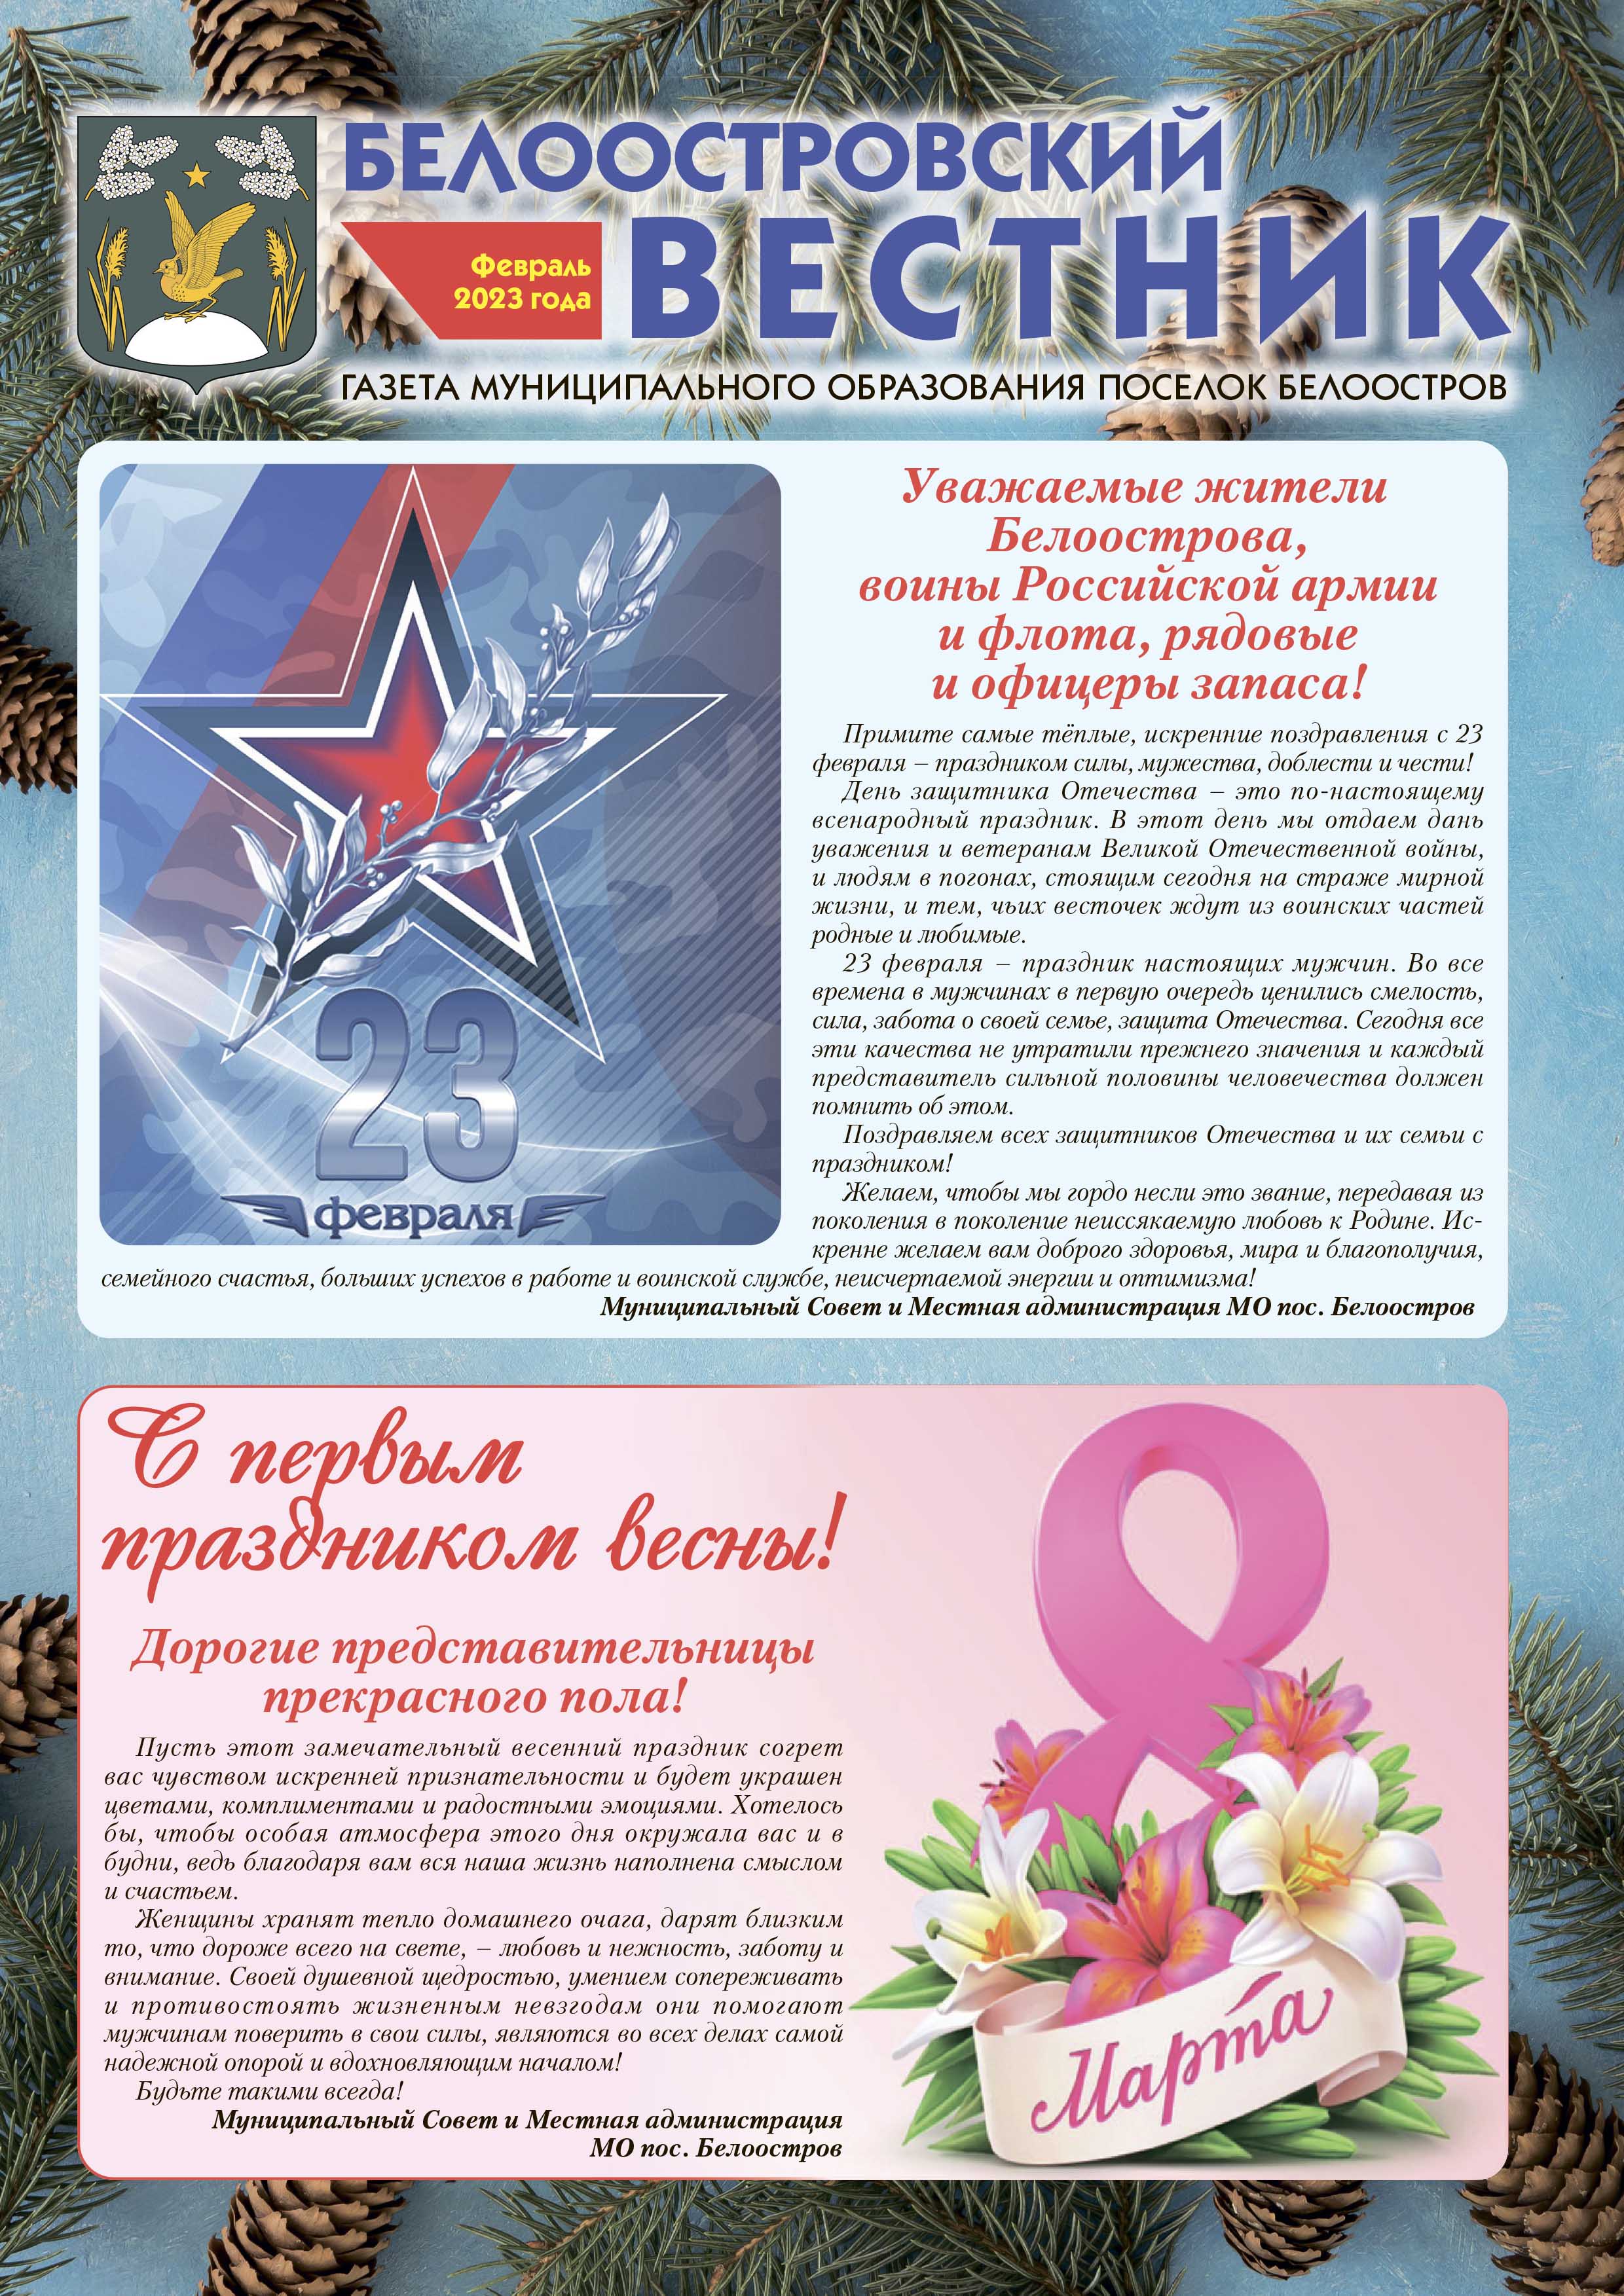 Белоостровский Вестник за февраль 2023 г.